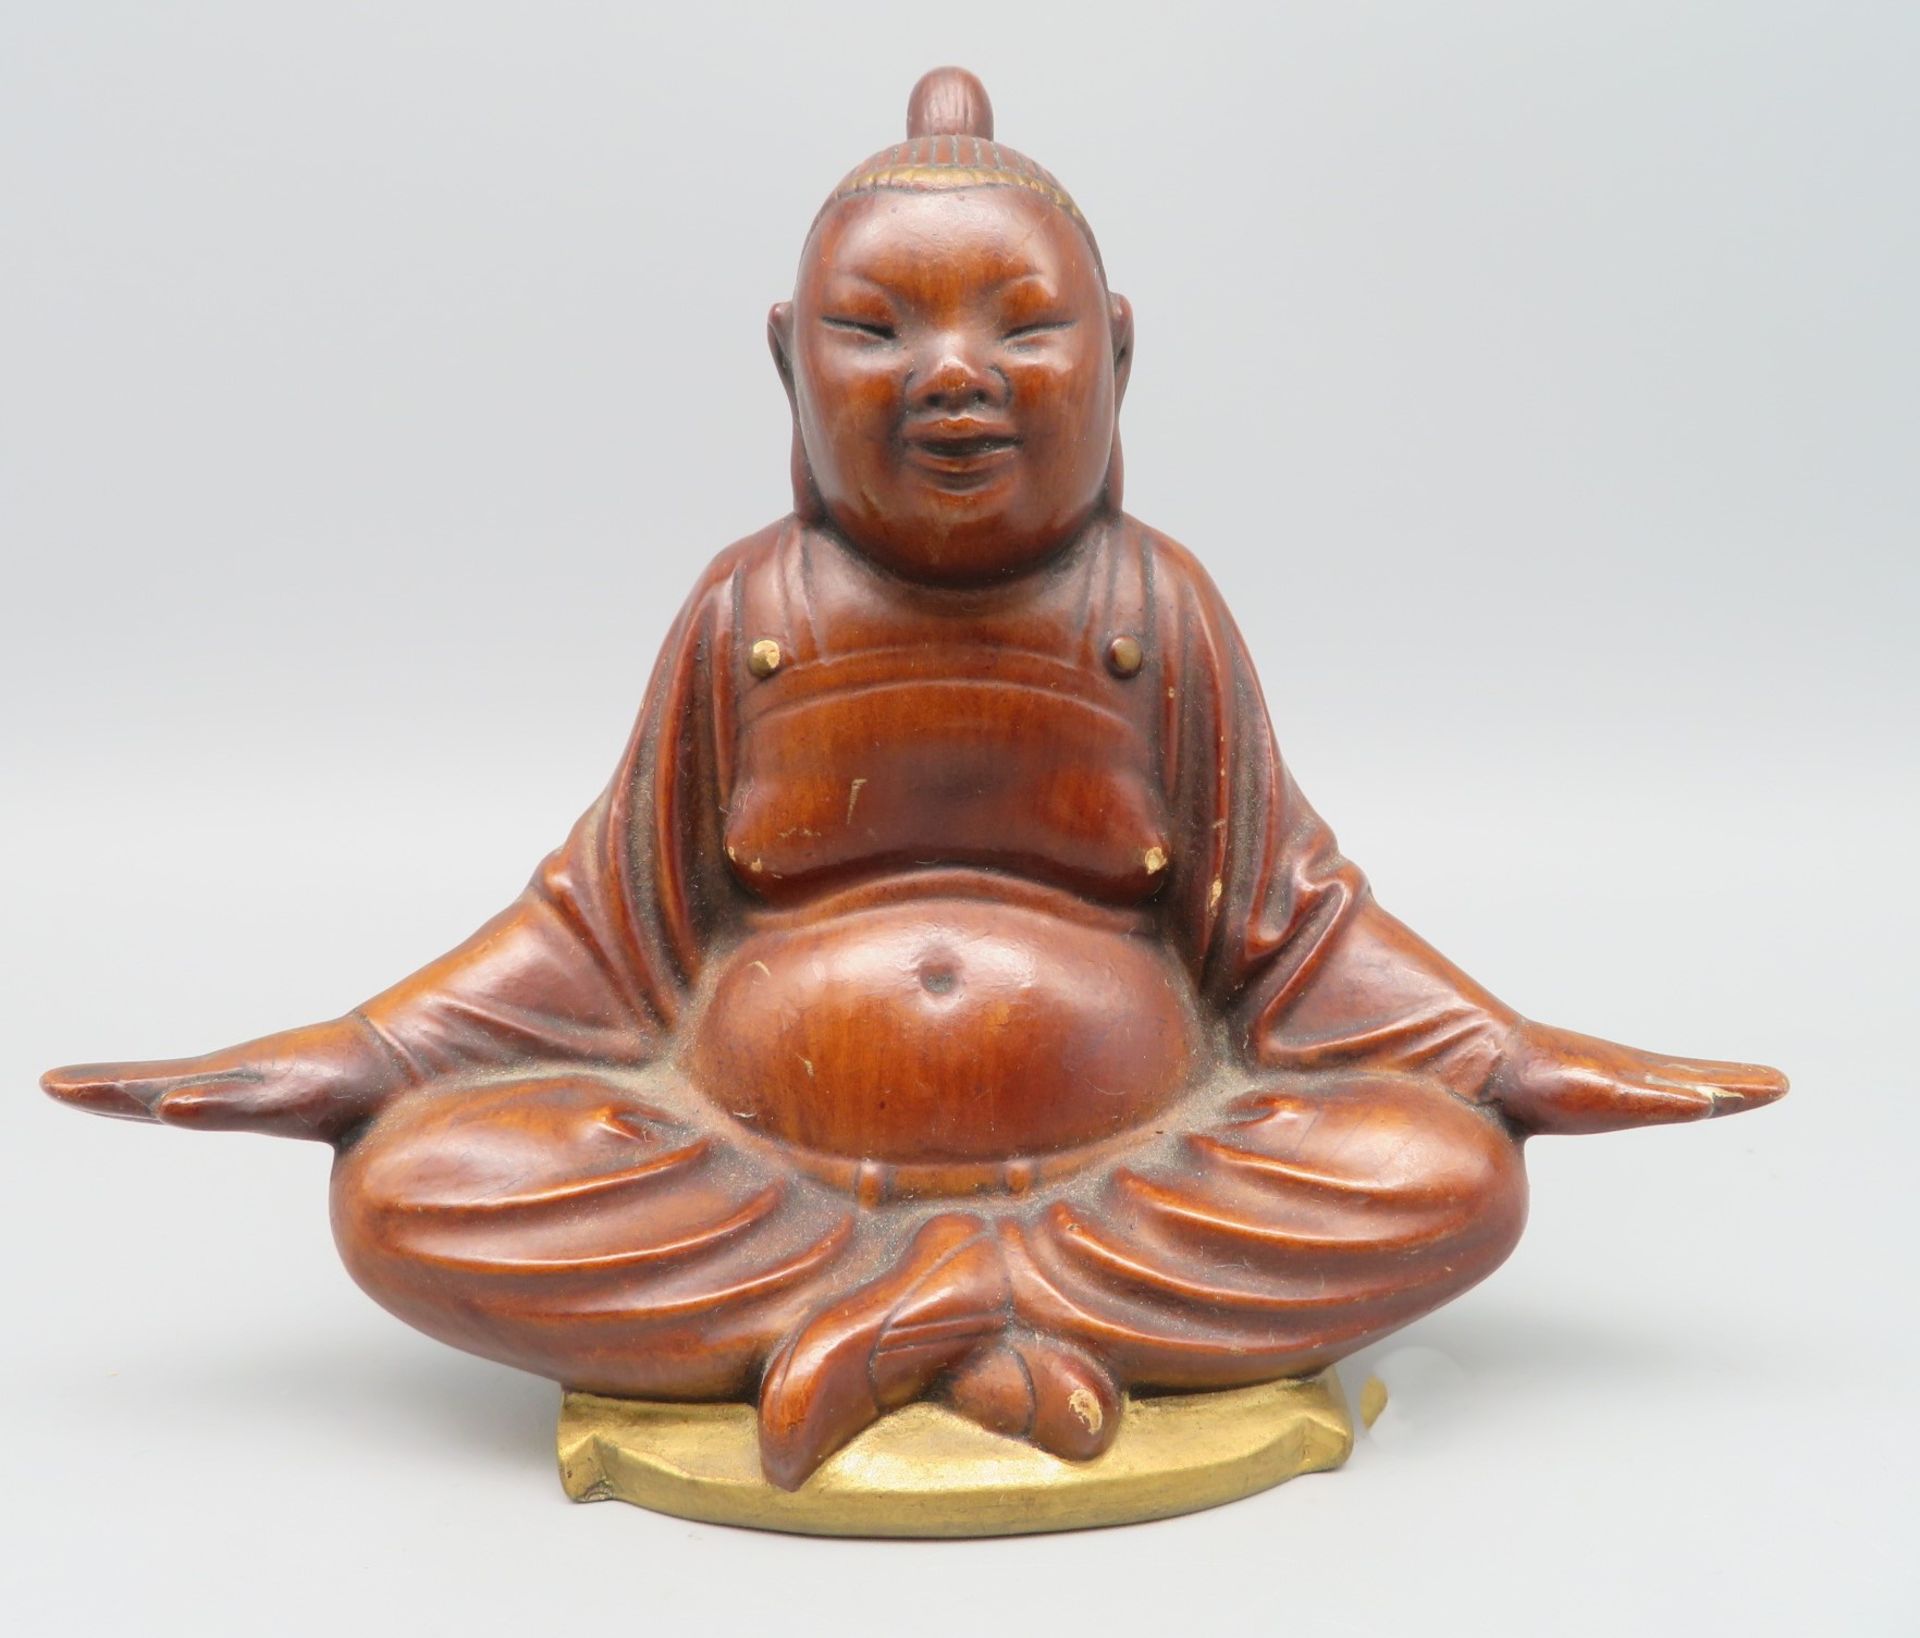 Sitzender Buddha, Schaubach Kunst, Goebel, 1957, Achatit, farbig gefasst, Originaletikett, Prägemar